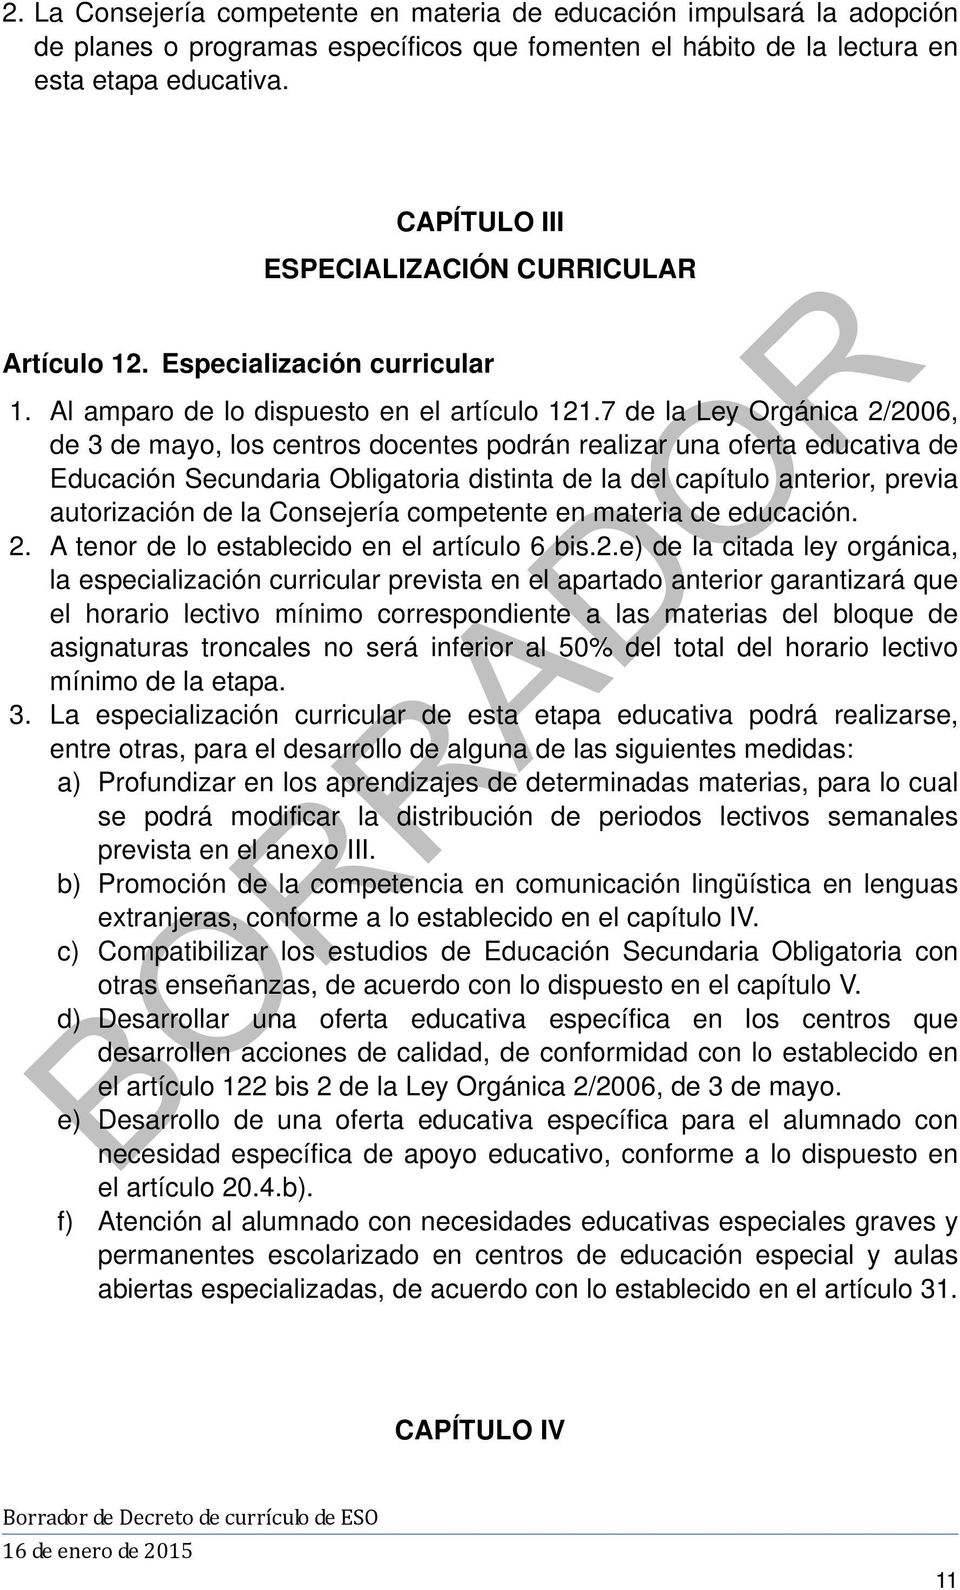 7 de la Ley Orgánica 2/2006, de 3 de mayo, los centros docentes podrán realizar una oferta educativa de Educación Secundaria Obligatoria distinta de la del capítulo anterior, previa autorización de